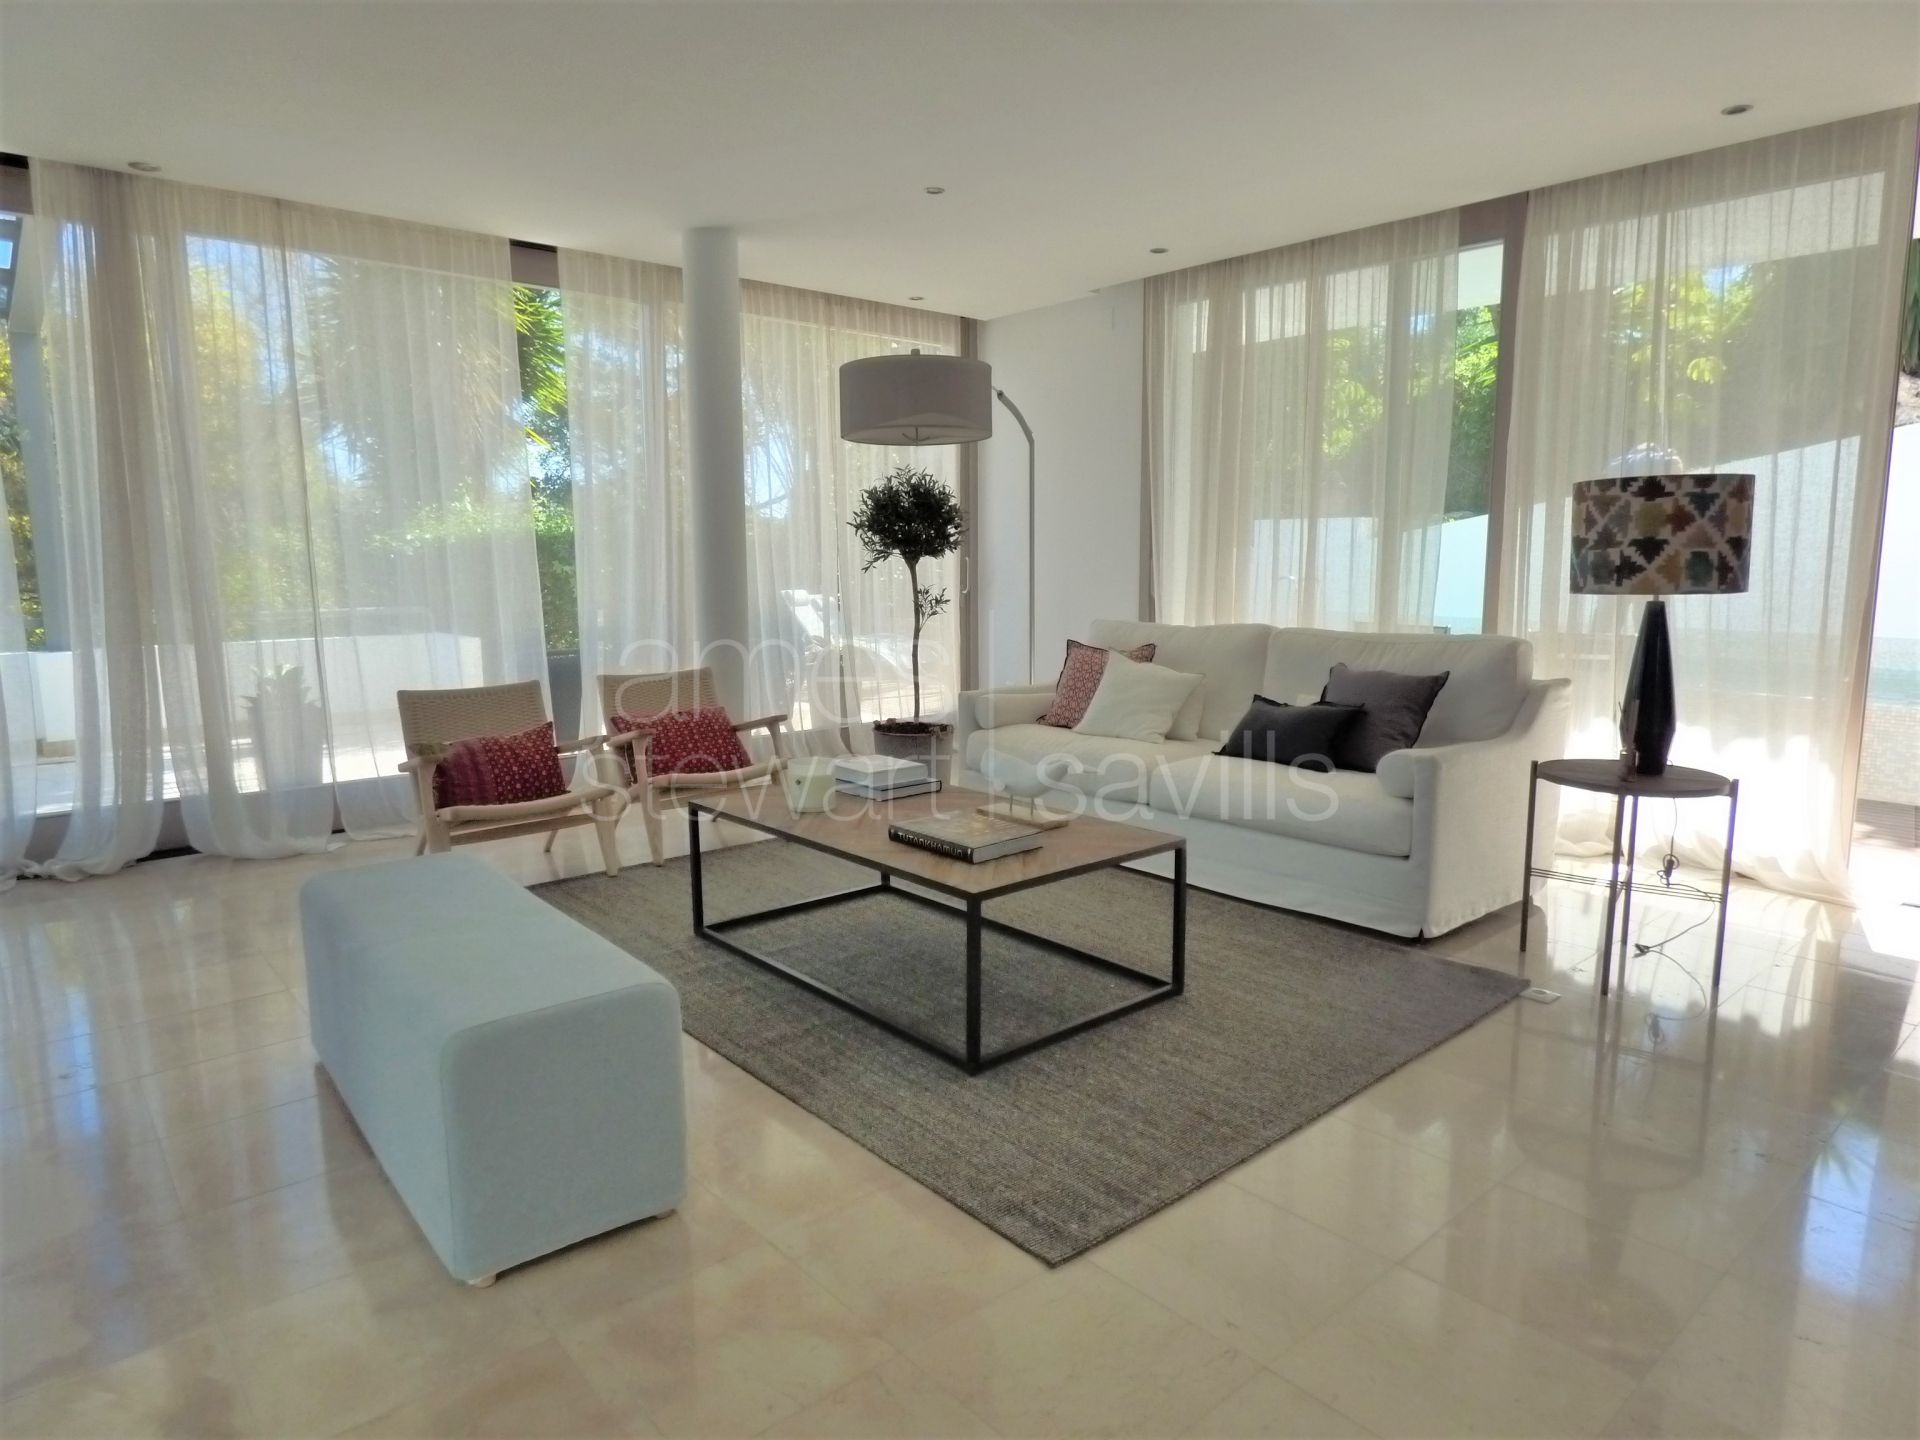 Villa de estilo contemporáneo y muy espaciosa - ideal para una gran familia.